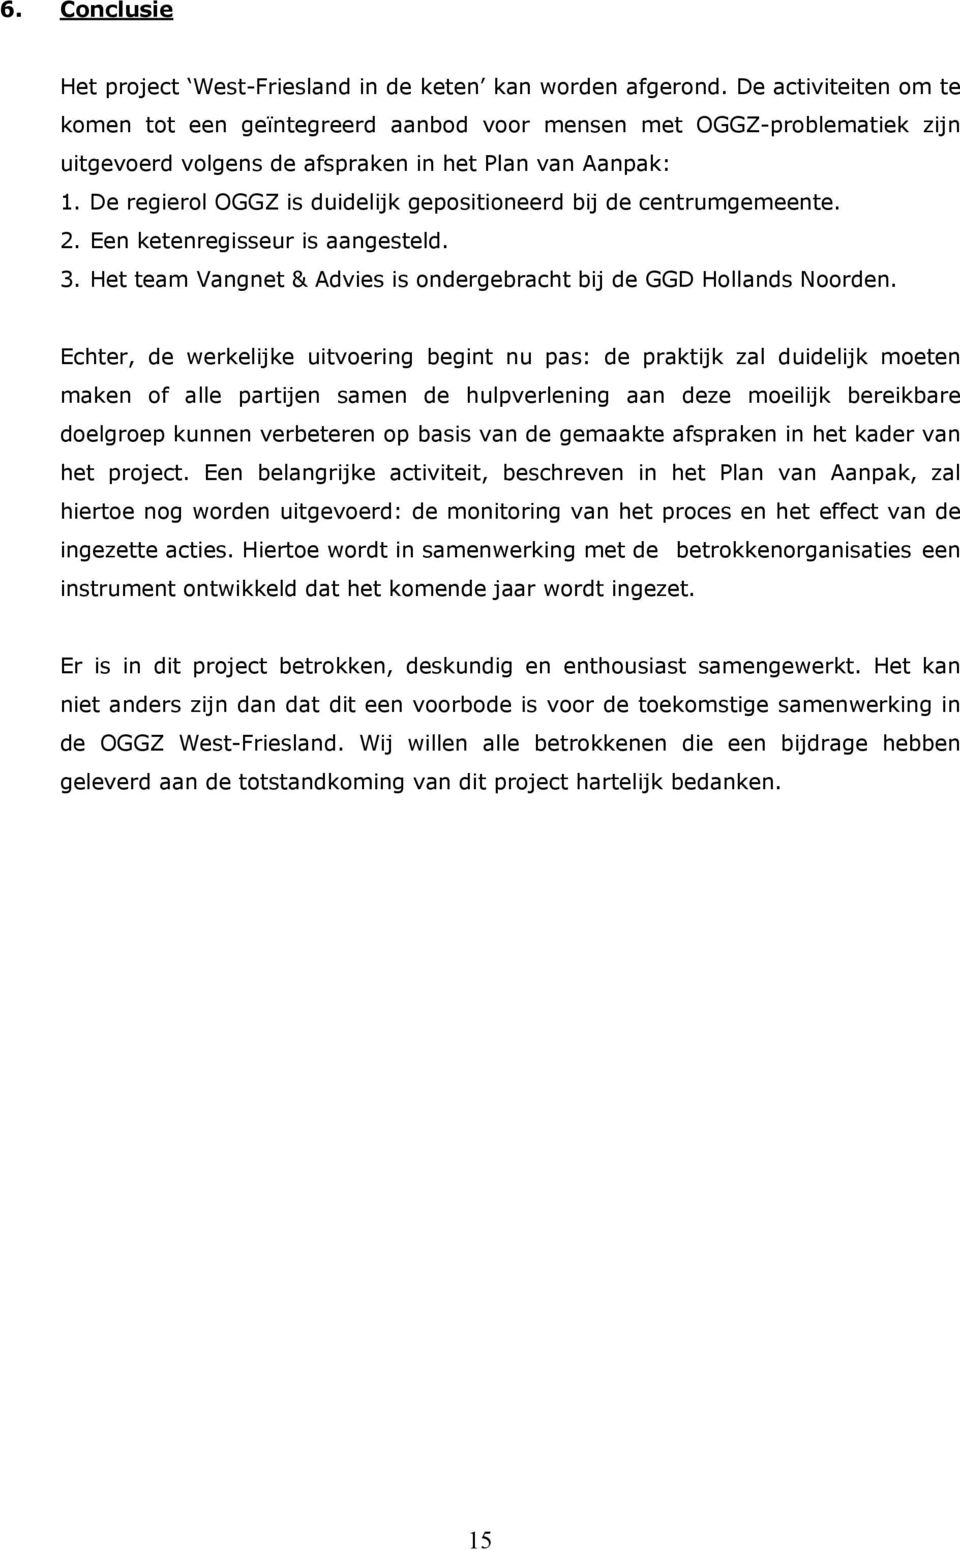 De regierol OGGZ is duidelijk gepositioneerd bij de centrumgemeente. 2. Een ketenregisseur is aangesteld. 3. Het team Vangnet & Advies is ondergebracht bij de GGD Hollands Noorden.